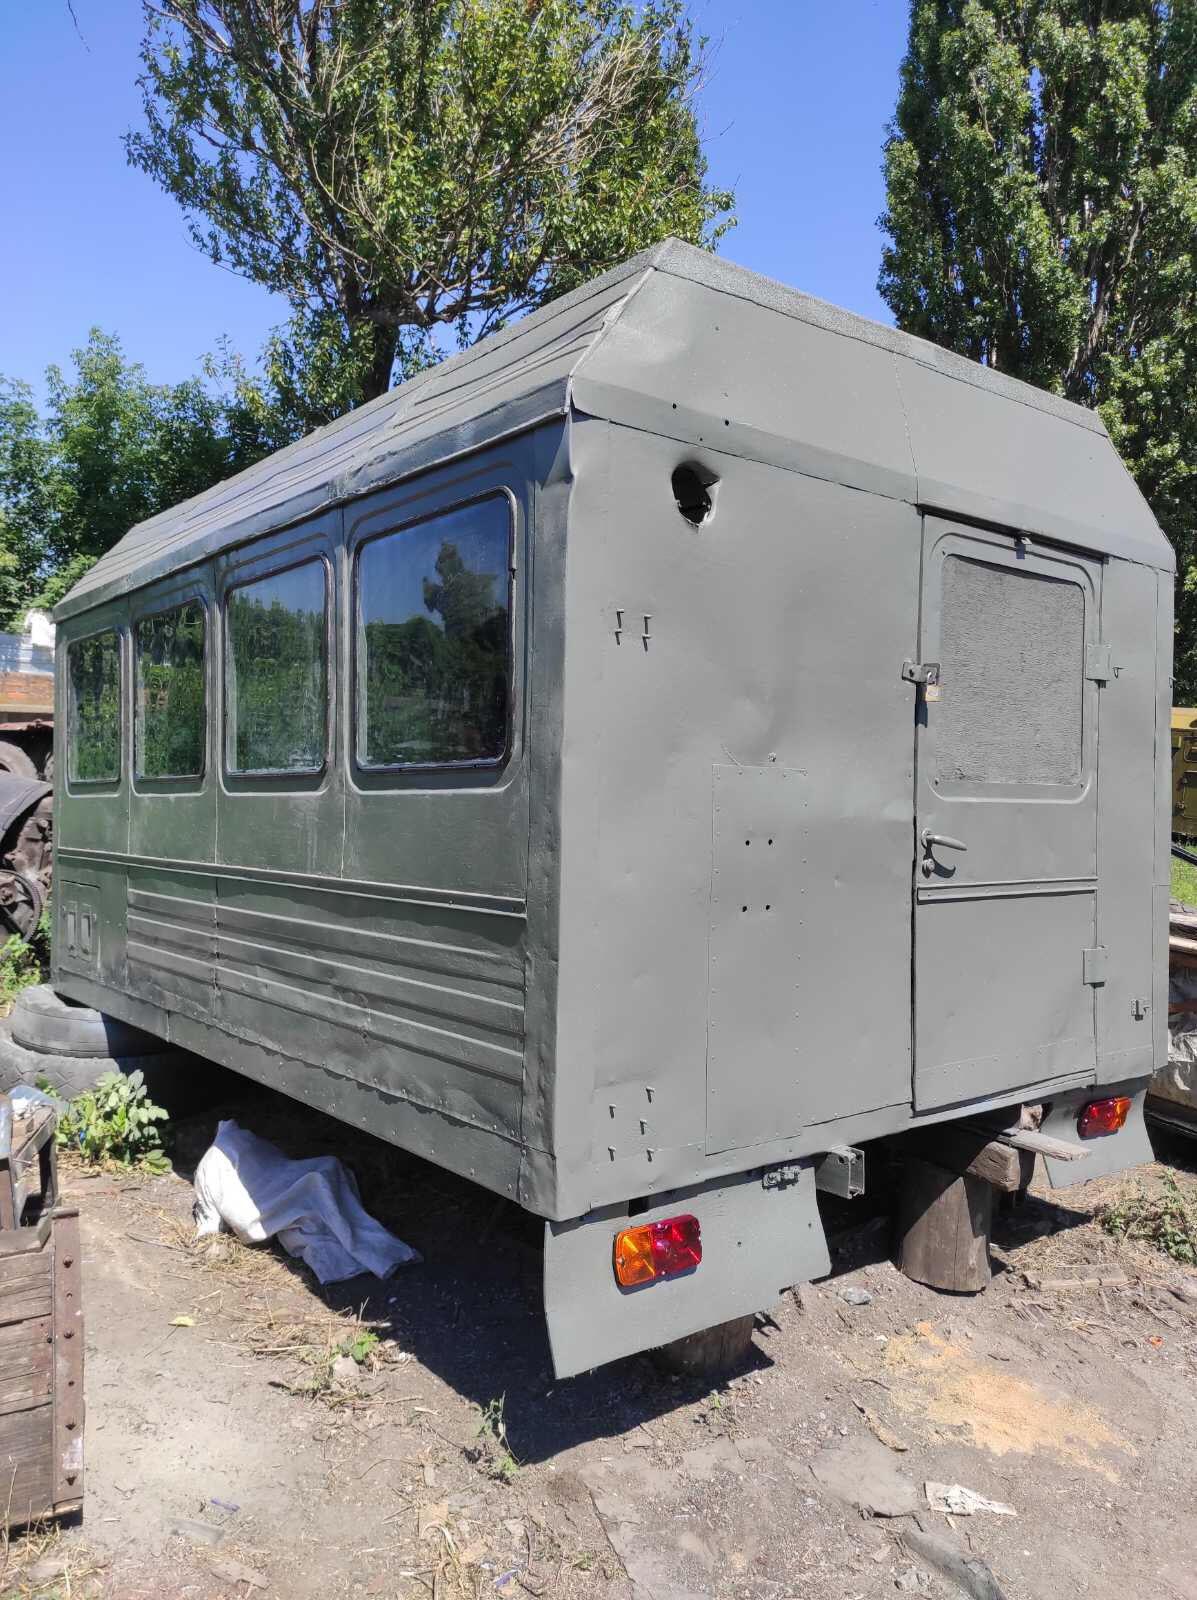 Кунг вагончик демонтируемый с автомобиля ГАЗ-66